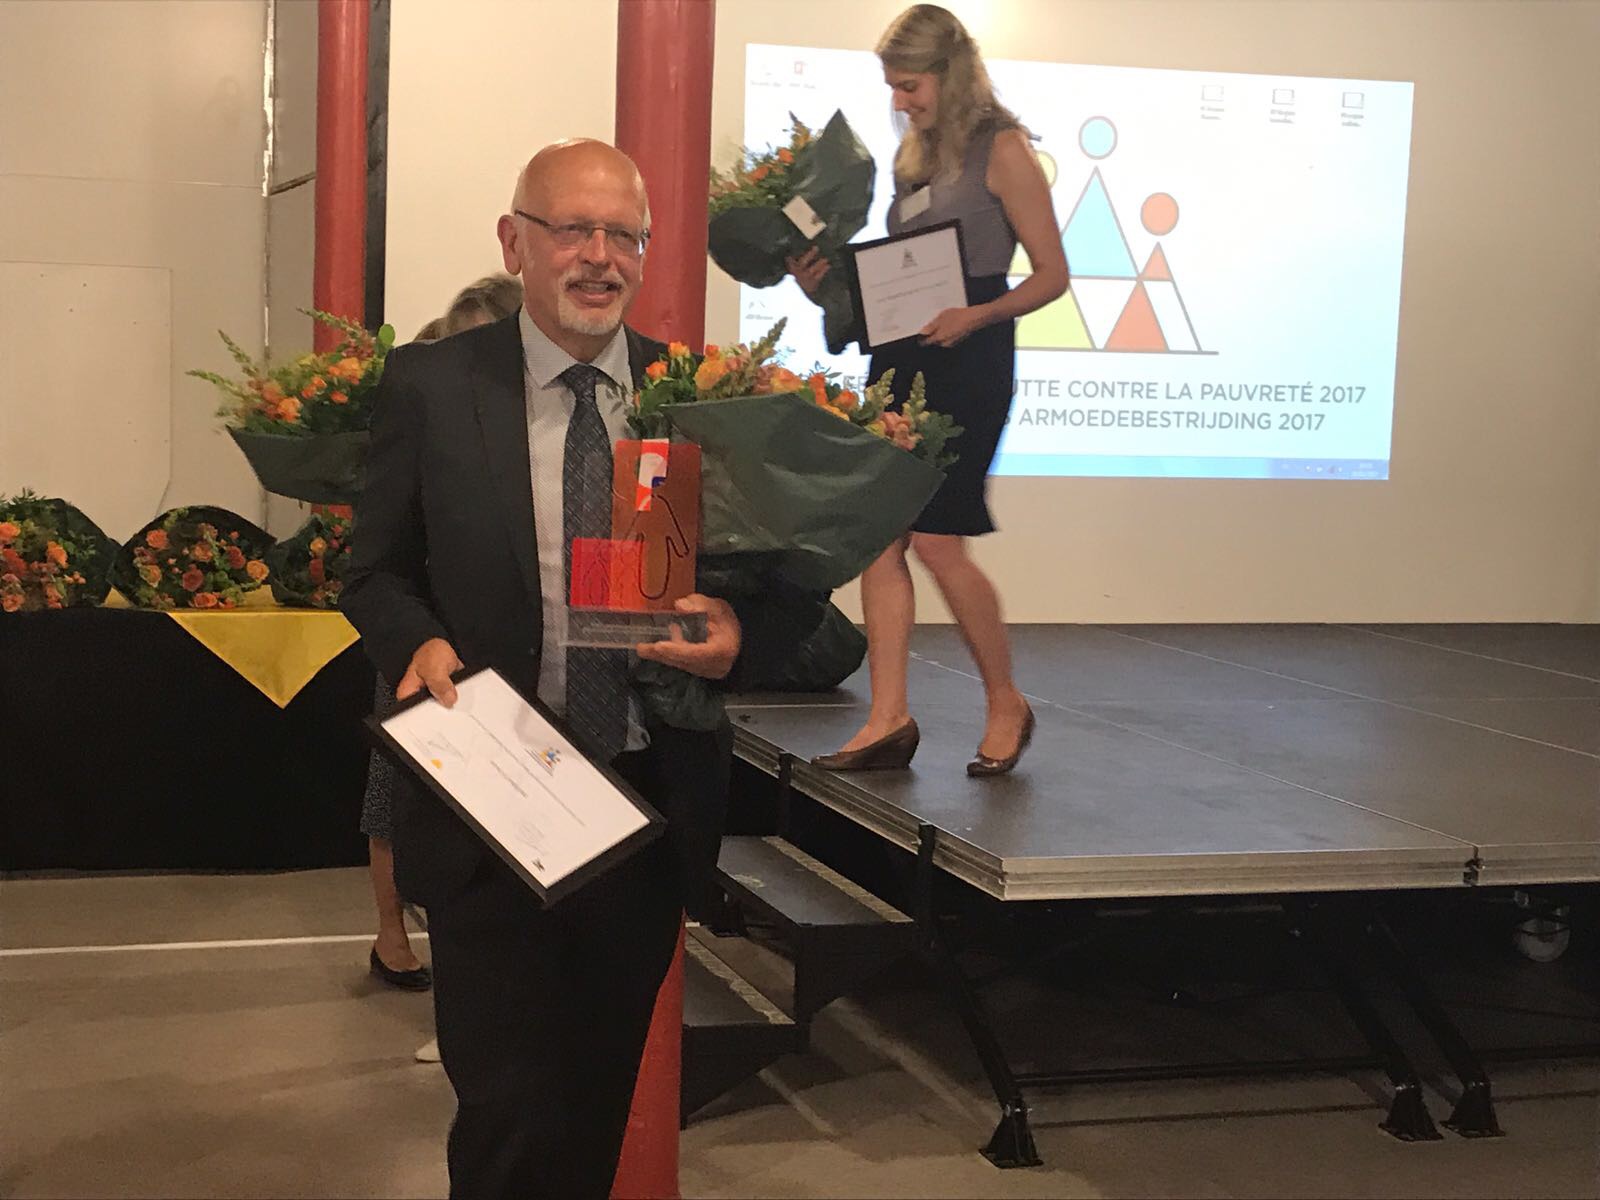 Limburgse RIMO wint de Federale Prijs voor Armoedebestrijding